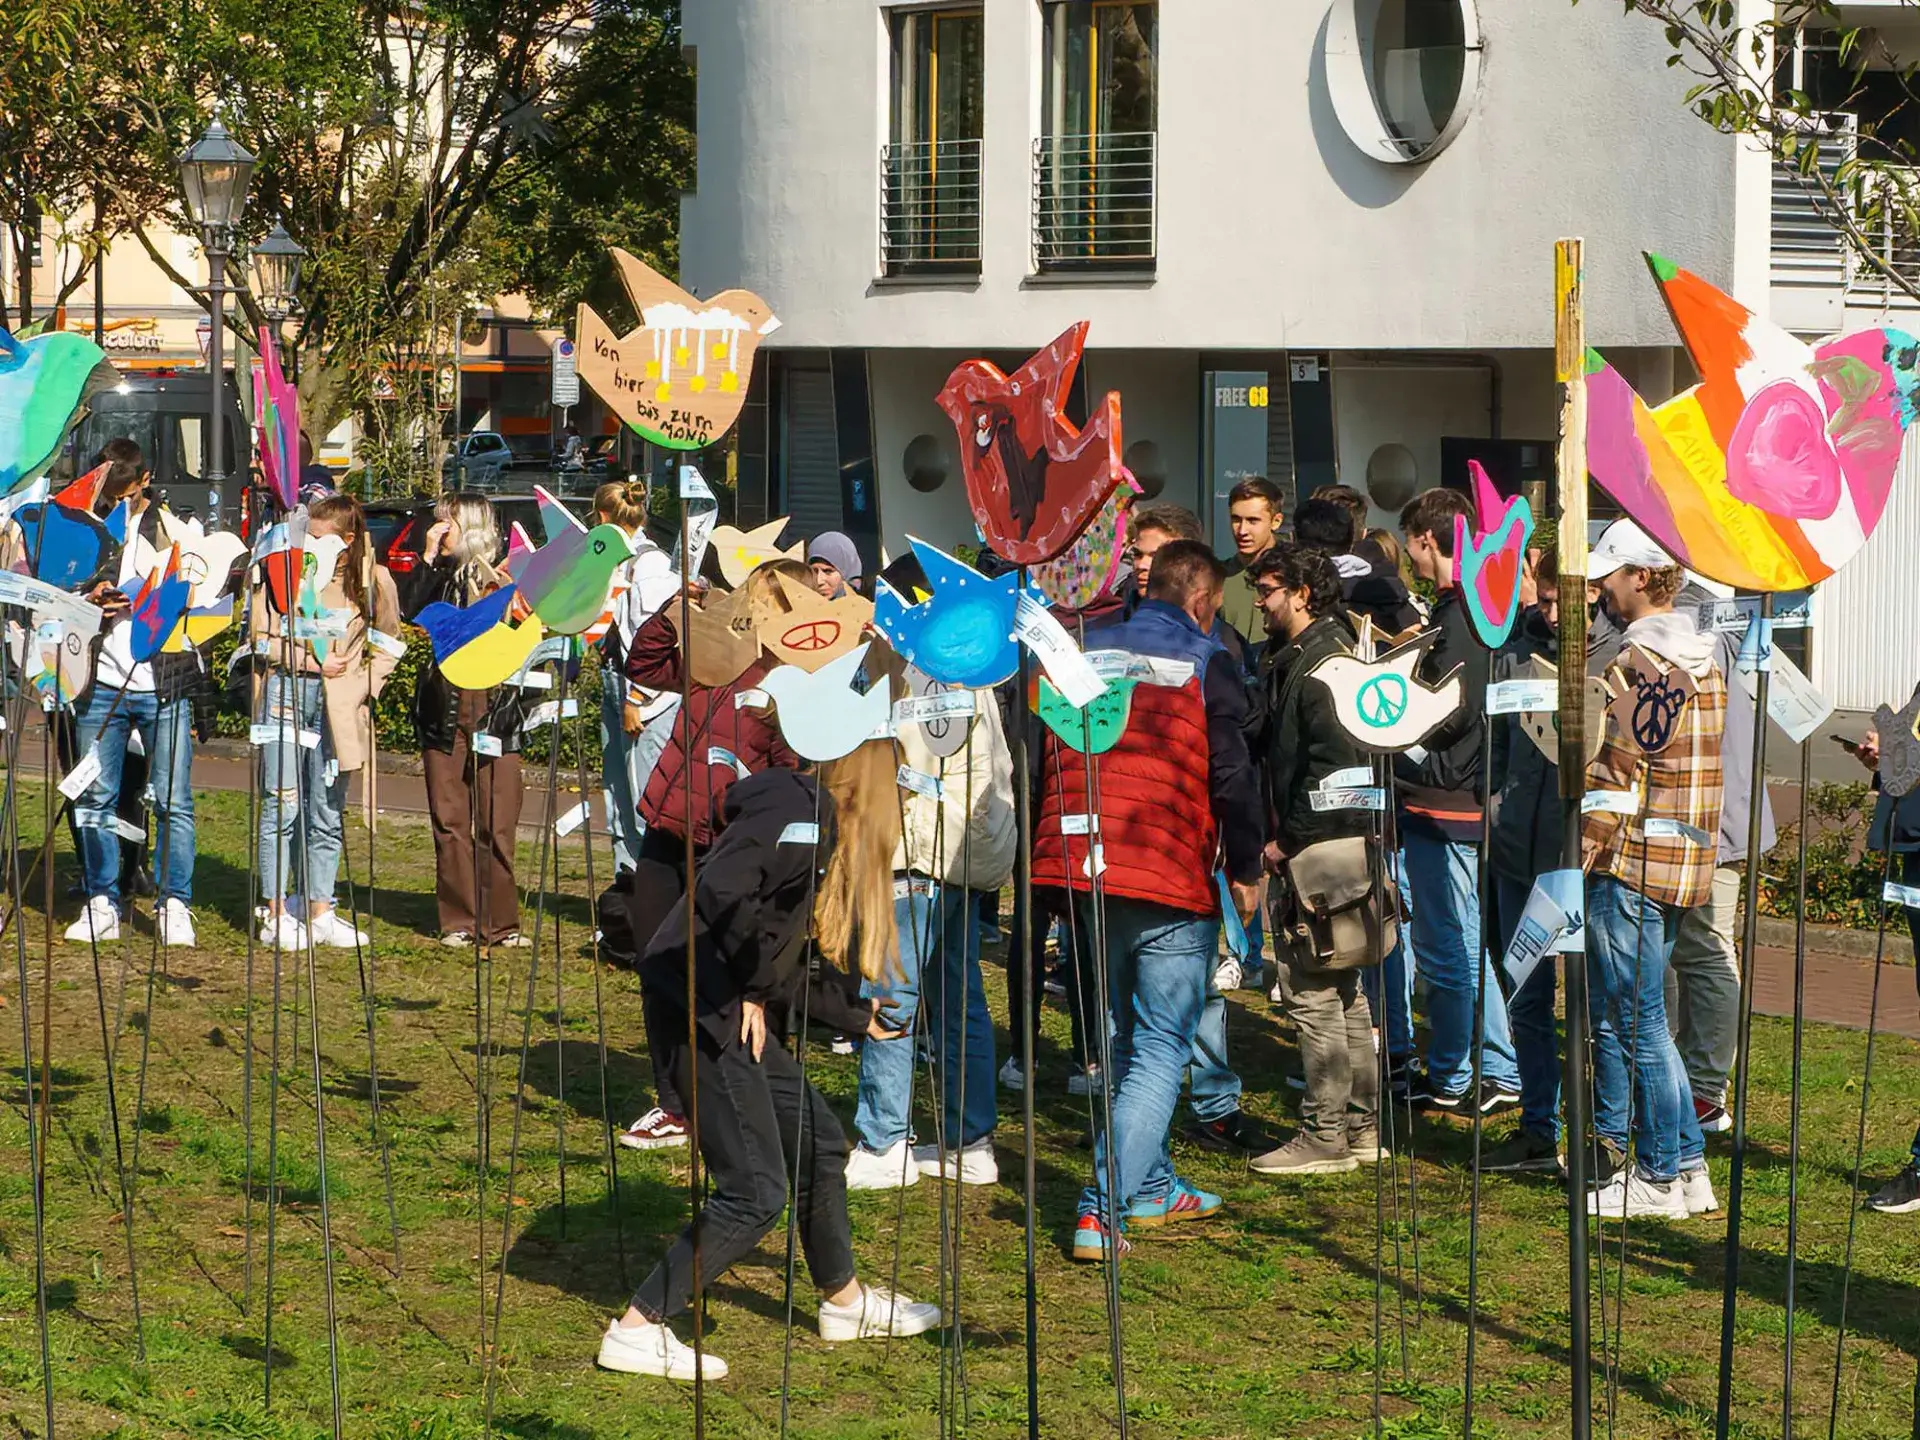 Tolerantes Dinslaken - Projekte 2022 - Friedenstauben - Friedenszeichen … in unserer Stadt! - Abschlussveranstaltung des Projekts - Bild 4 von 8